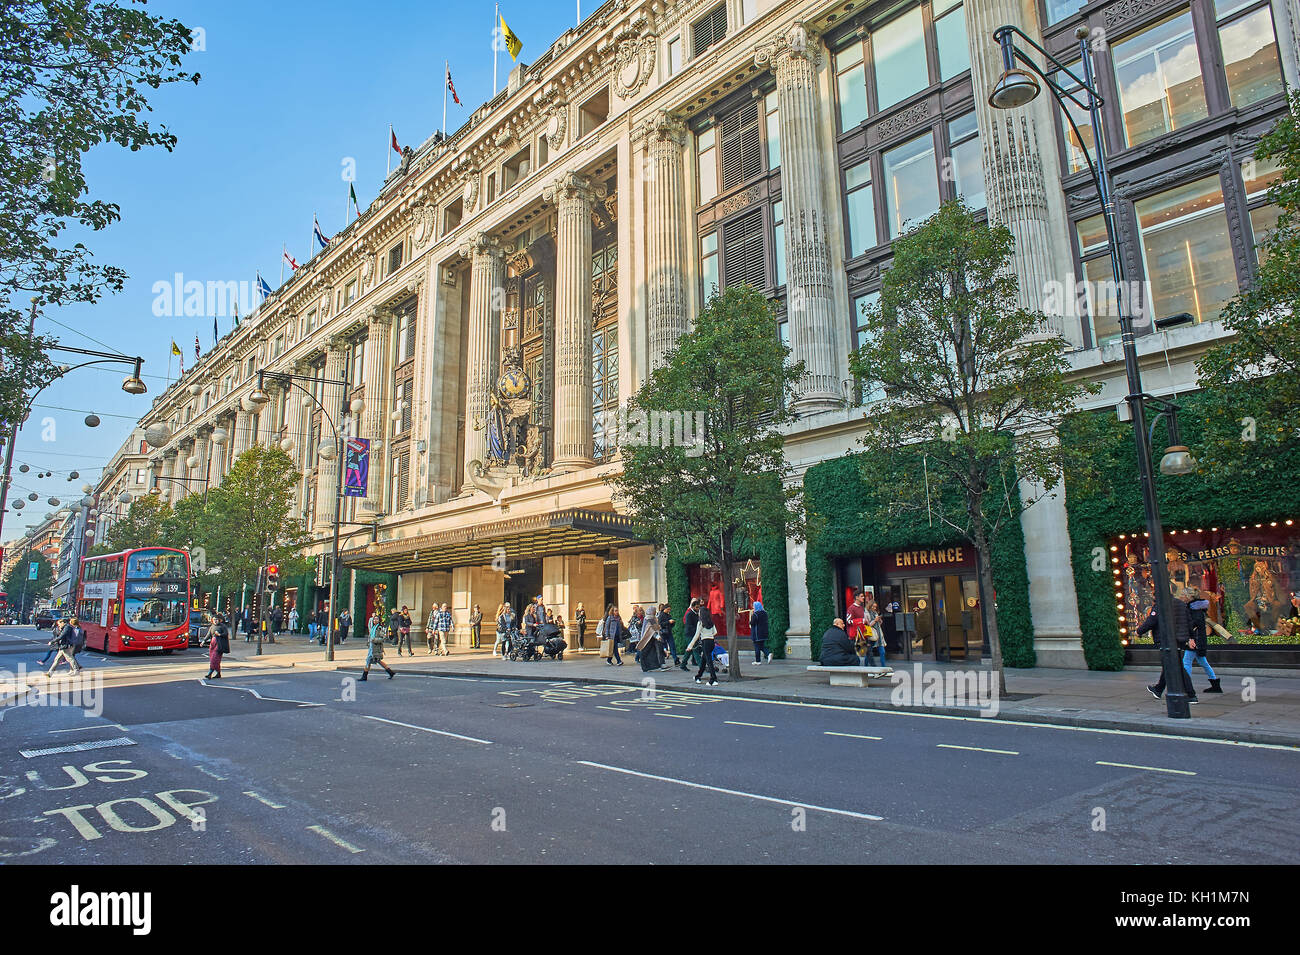 Dal grande magazzino Selfridges è un iconico Edificio sulla London Oxford Street nel West End. Foto Stock